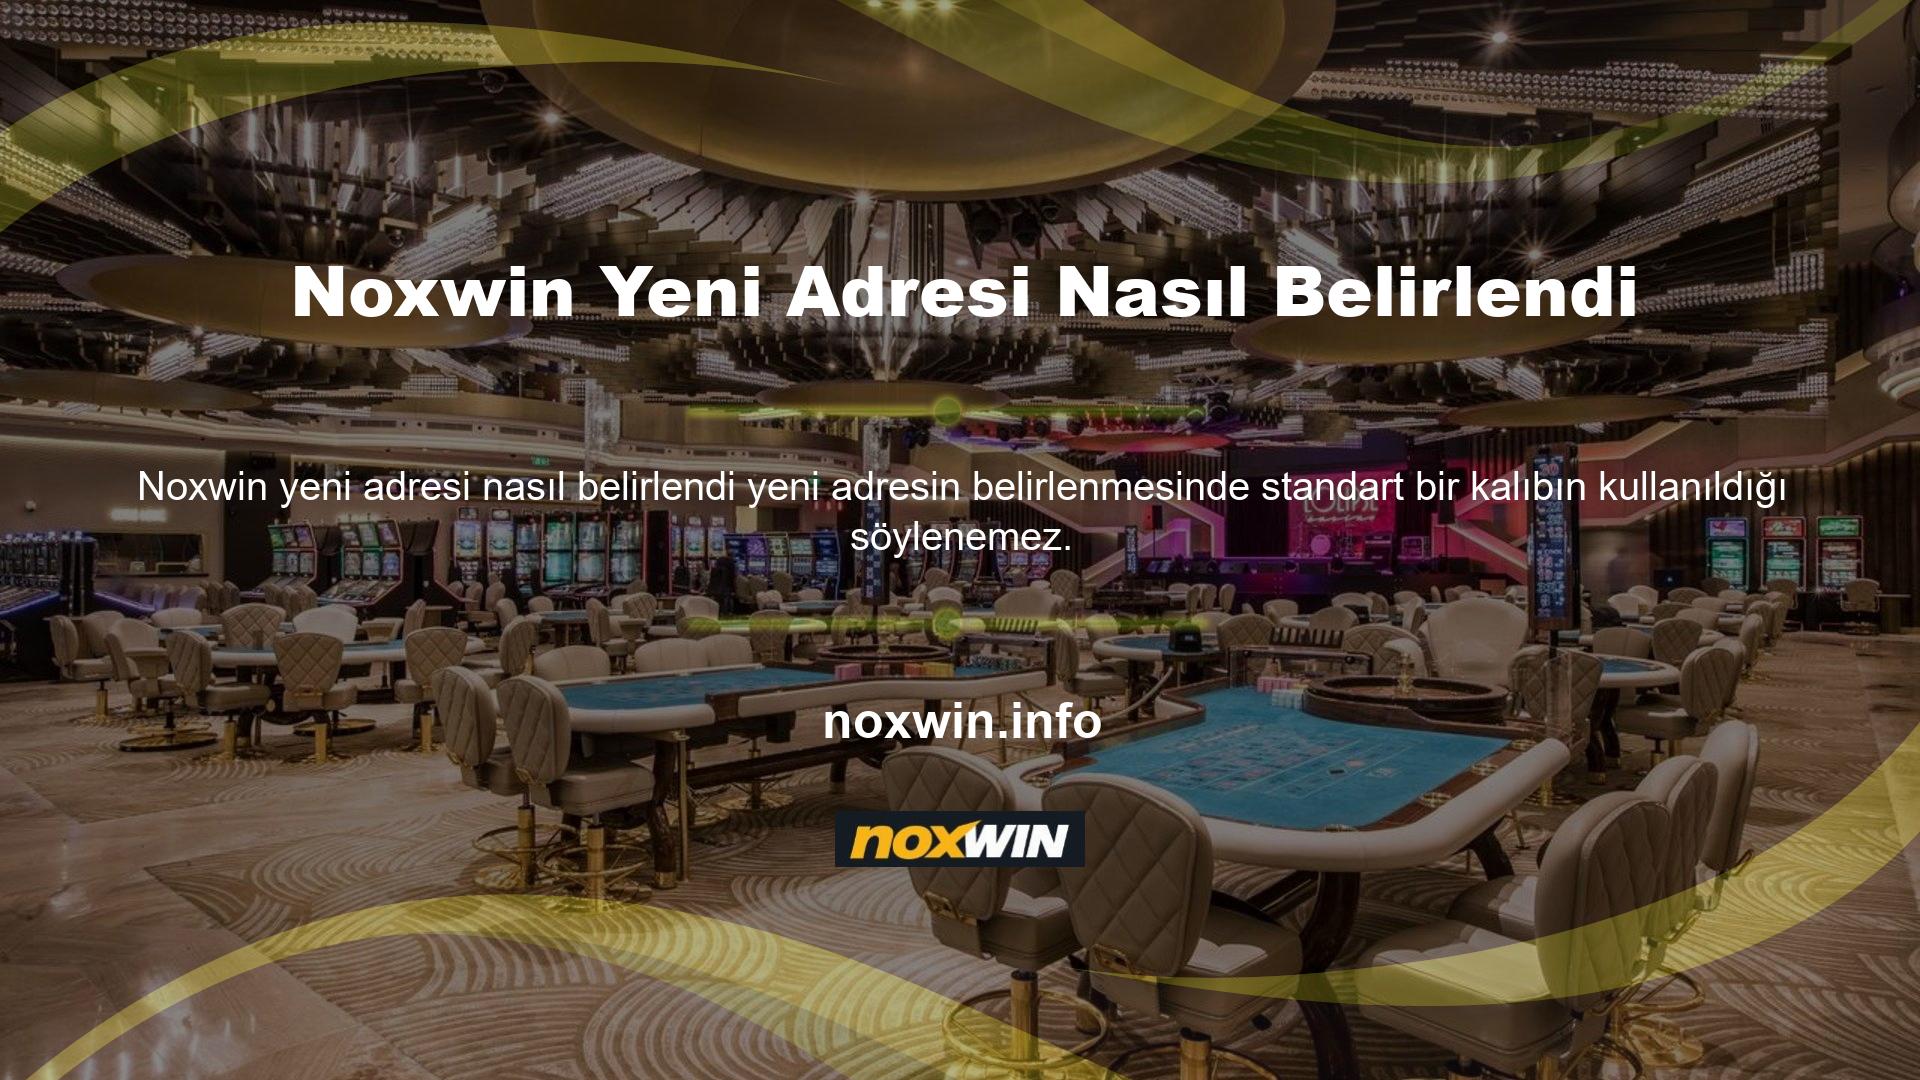 Web sitesinin yeni adresi: Noxwin yeni adresi nasıl belirlendi ve kuruldu? Türk kanunlarına göre kapalıdır